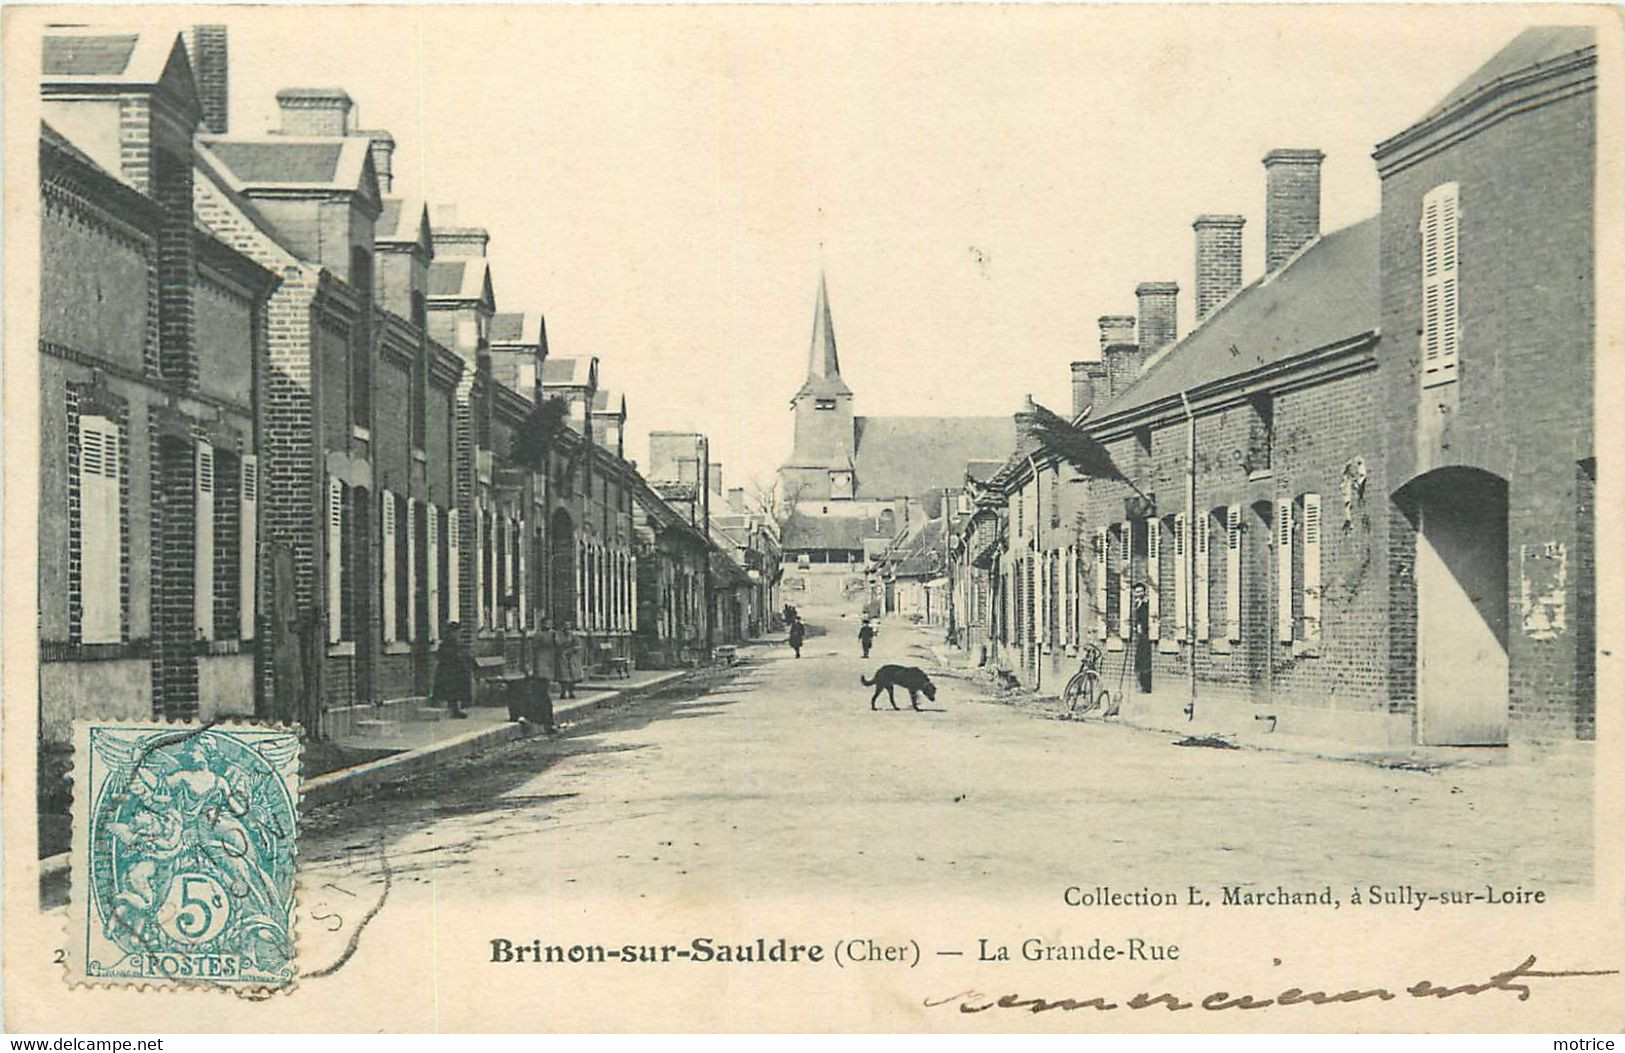 BRINON SUR SAULDRE - La Grande Rue. - Brinon-sur-Sauldre